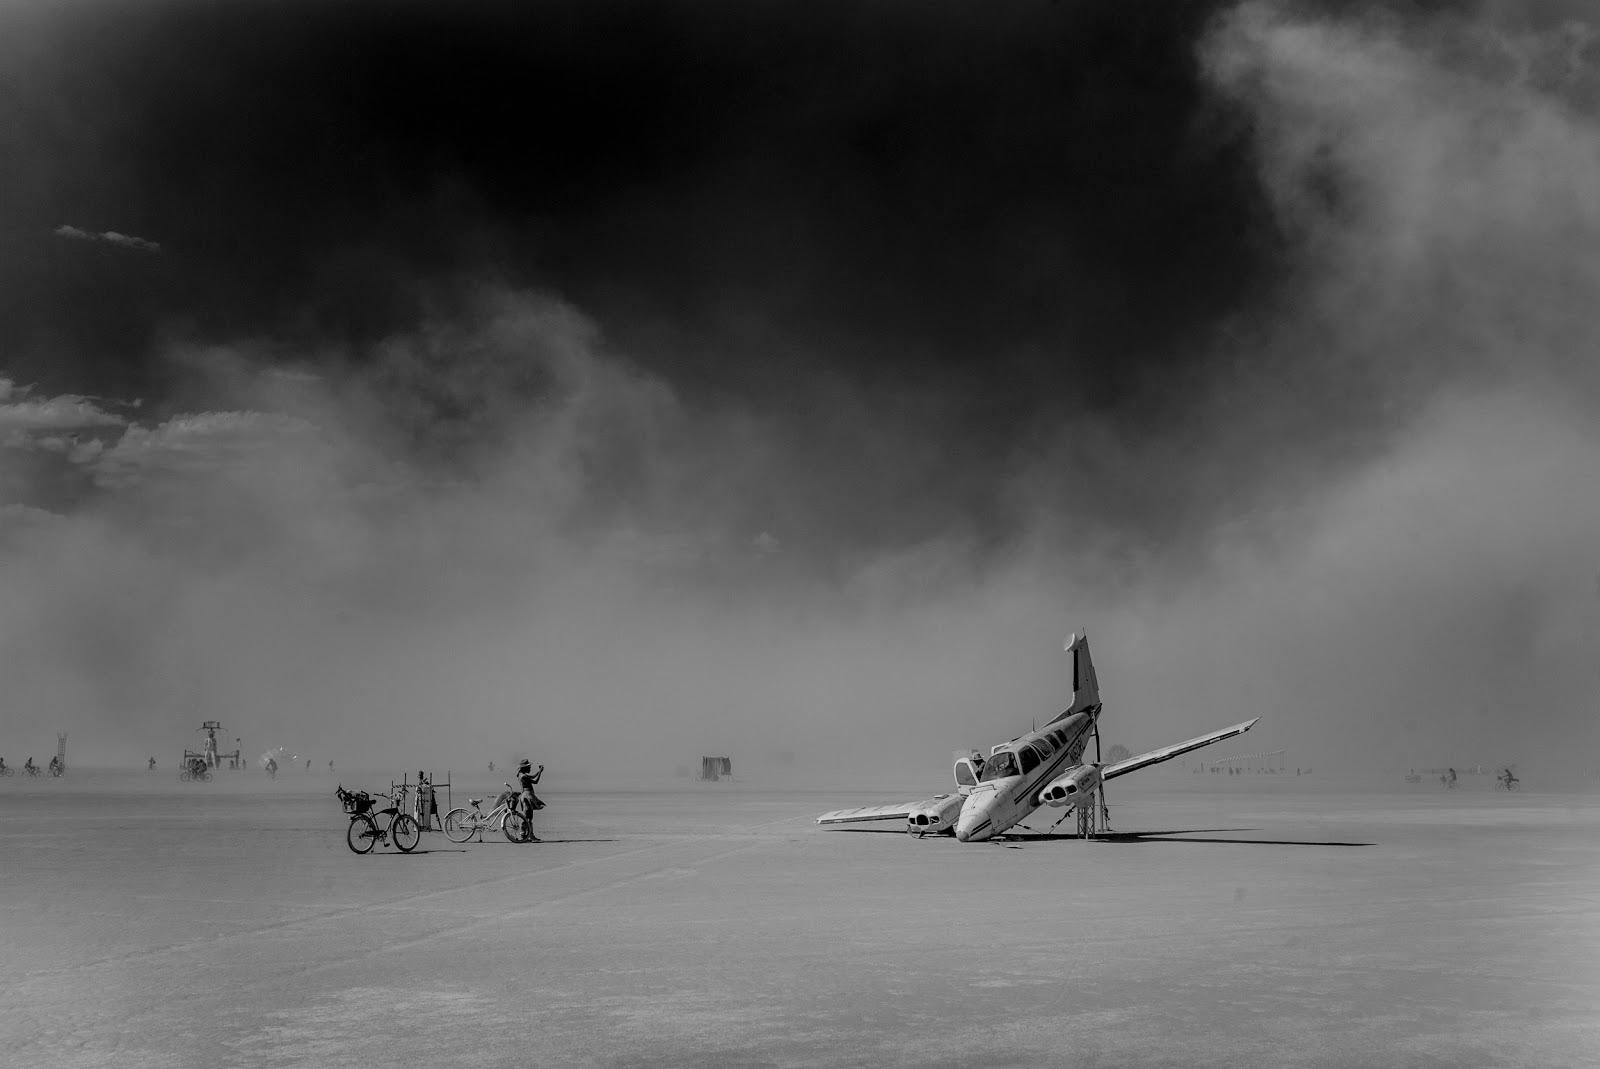 Plane Crash at Black Rock, 21e siècle, photographie de paysage, contemporaine